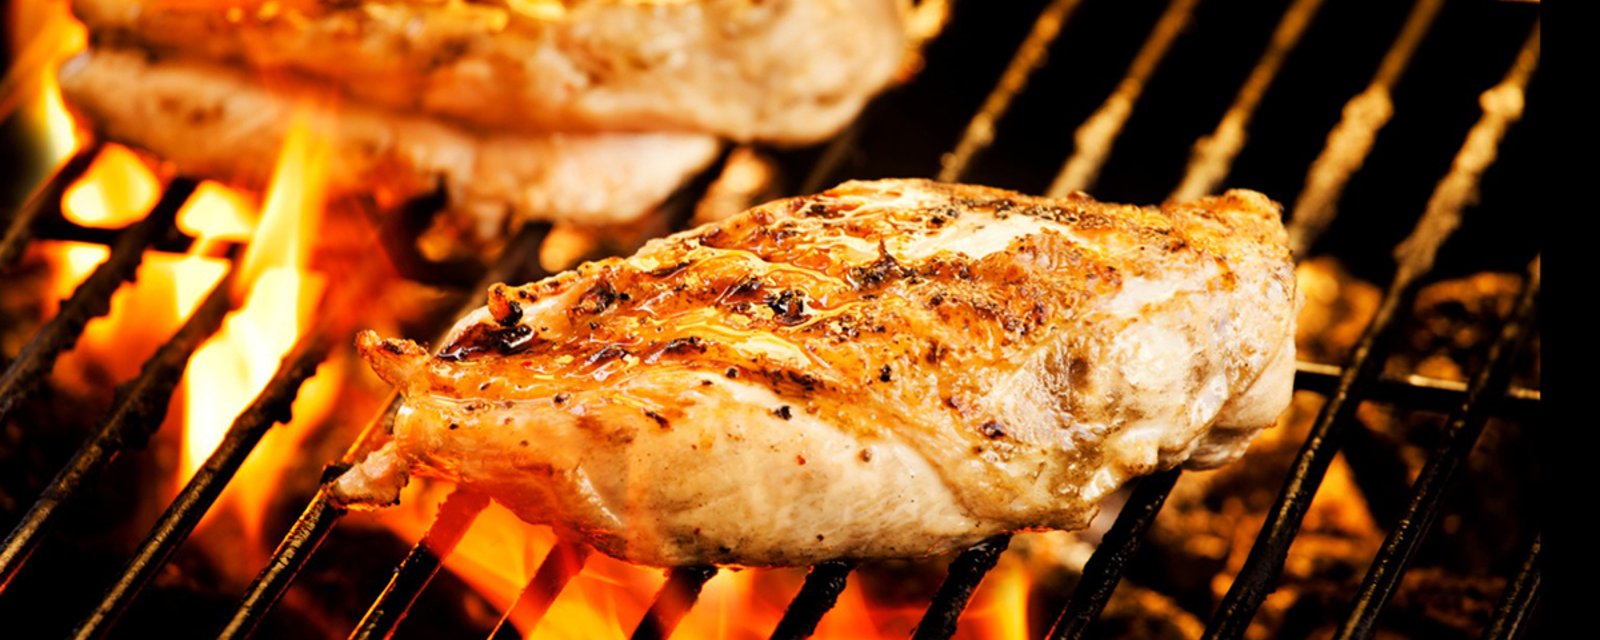 Connaissez-vous tous les trucs de pro pour des poitrines de poulet parfaitement réussies sur le barbecue?